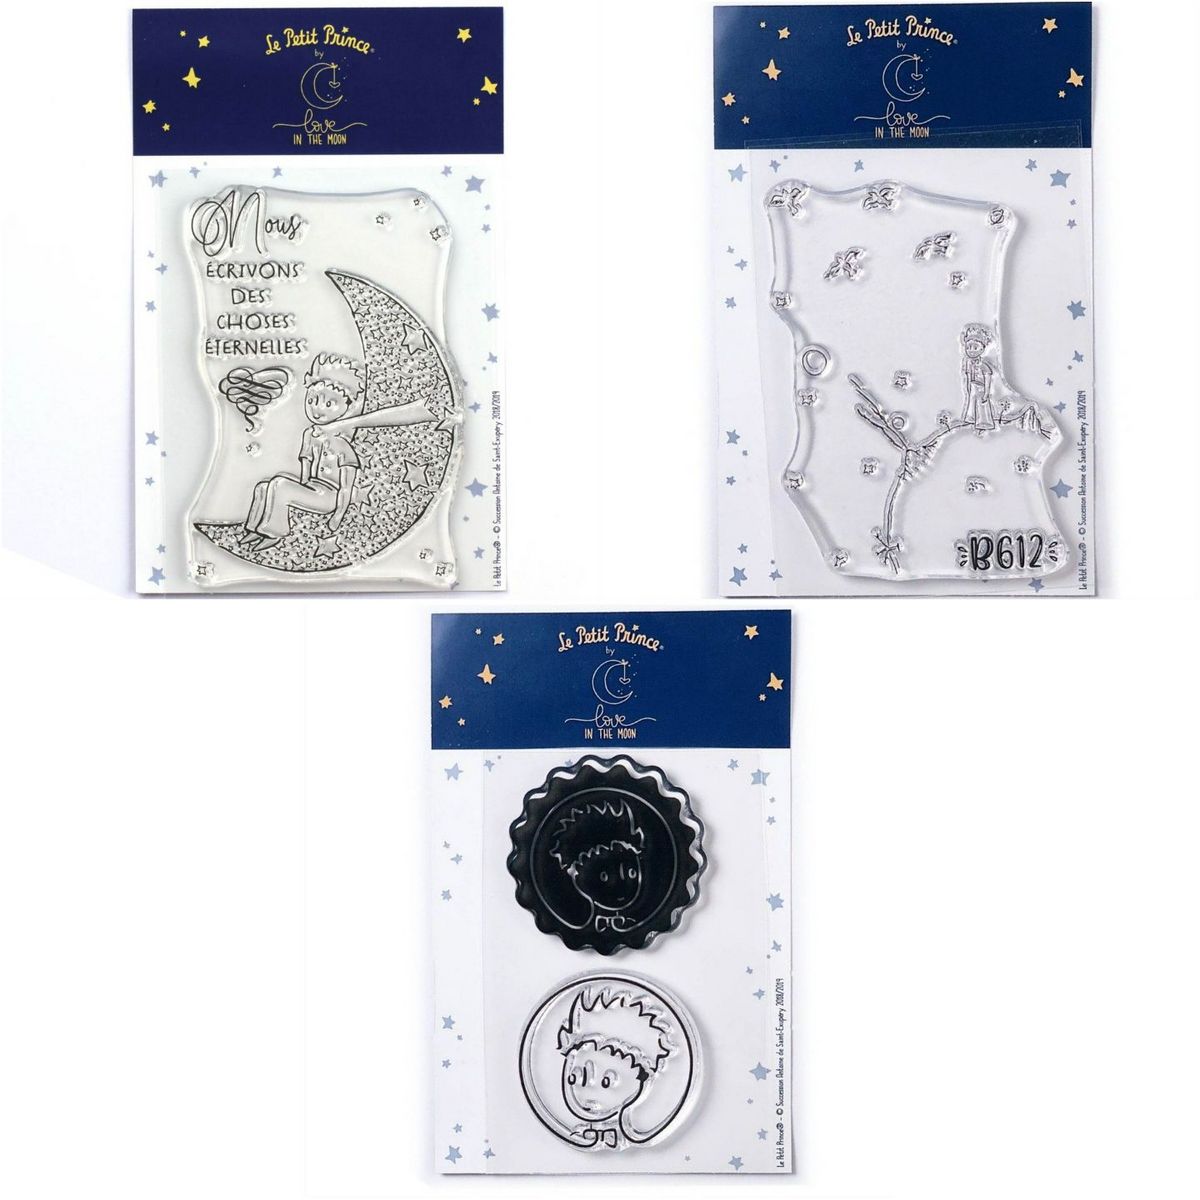 Youdoit 4 Tampons transparents Le Petit Prince et La lune + Astéroïd + Portraits